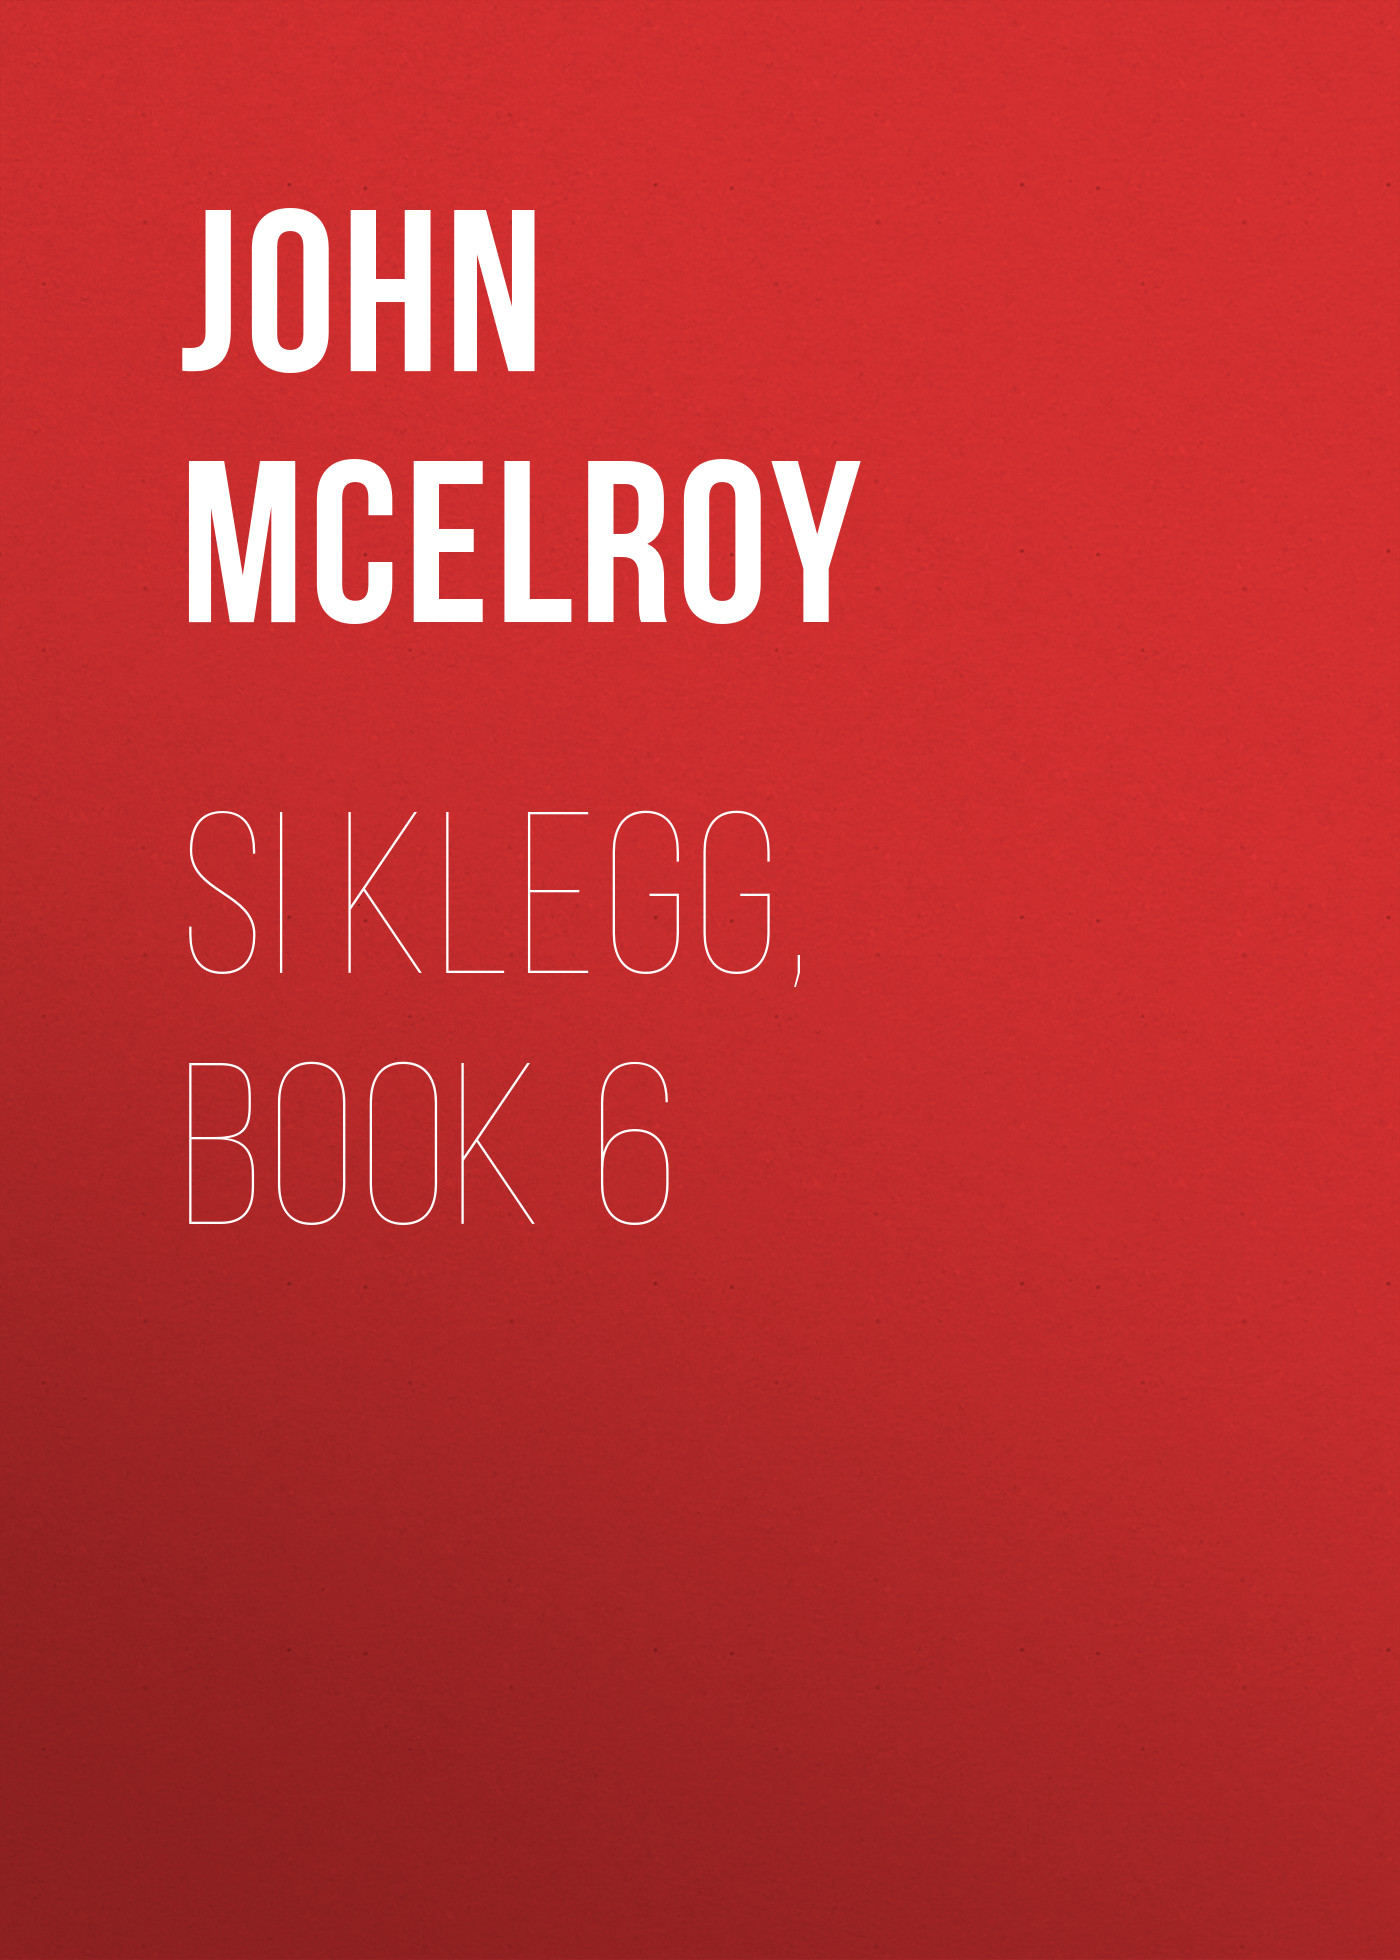 Книга Si Klegg, Book 6 из серии , созданная John McElroy, может относится к жанру Зарубежная классика, История, Зарубежная образовательная литература, Зарубежная старинная литература. Стоимость электронной книги Si Klegg, Book 6 с идентификатором 36324244 составляет 0 руб.